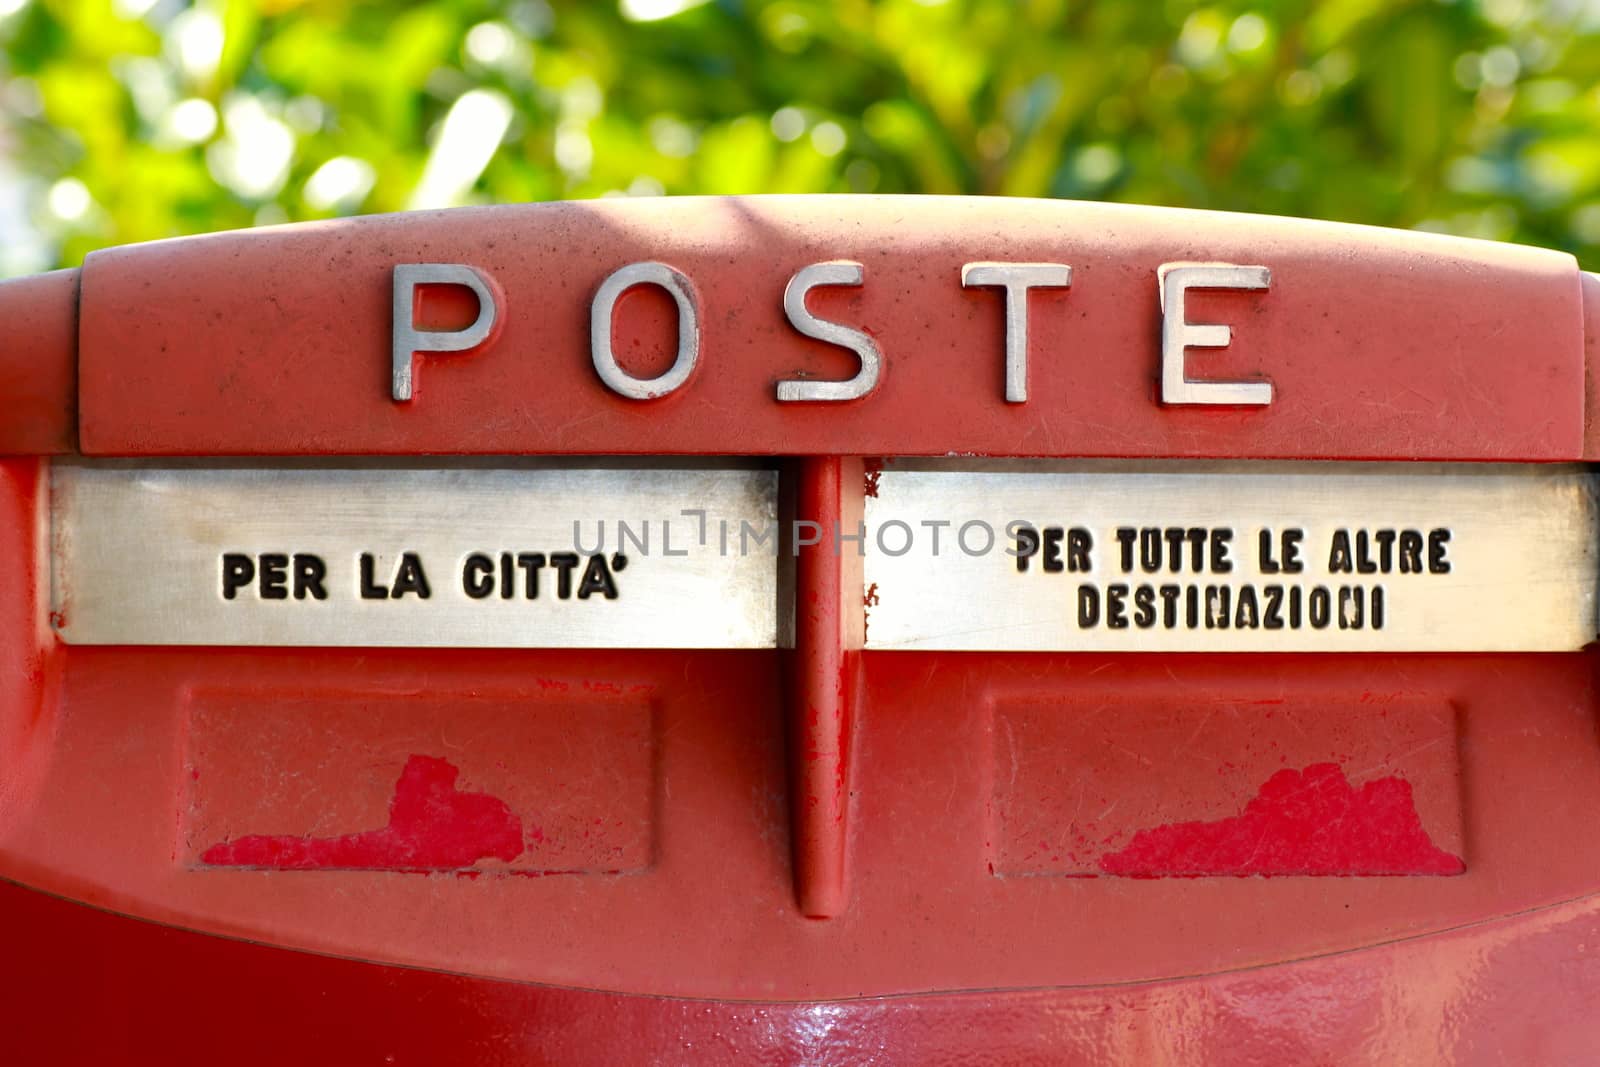 Poste: italian mailbox by lifeinapixel